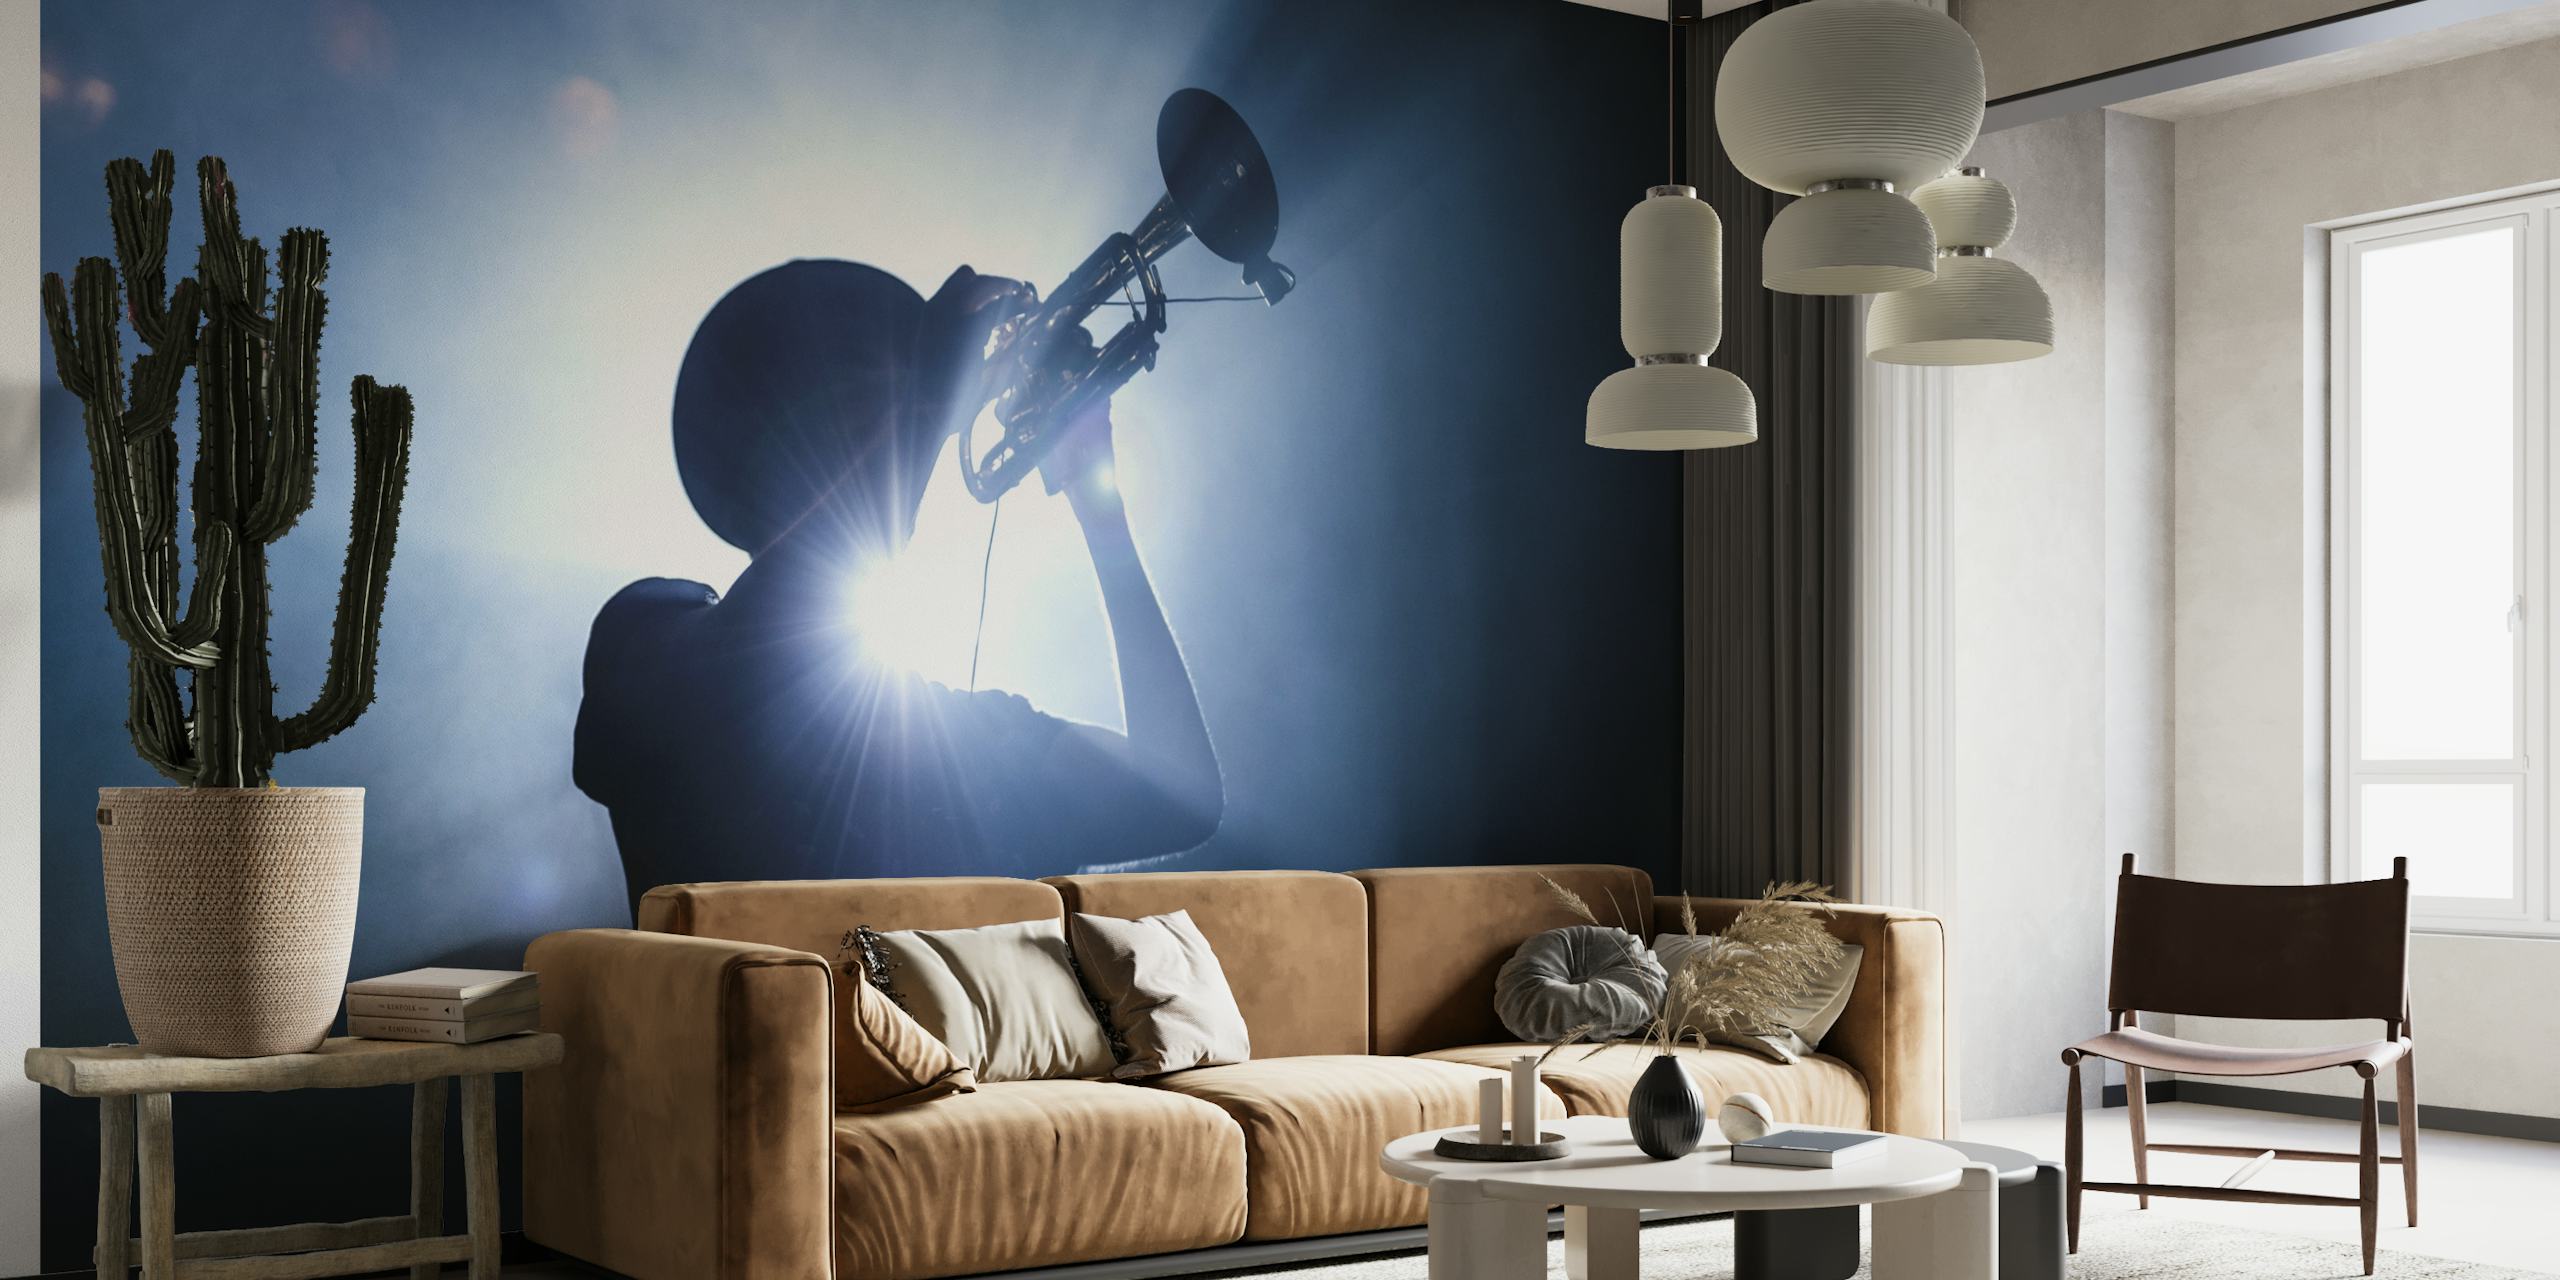 Die Silhouette eines Trompeters vor einem stimmungsvollen, beleuchteten Hintergrund ergibt ein eindrucksvolles Wandgemälde.